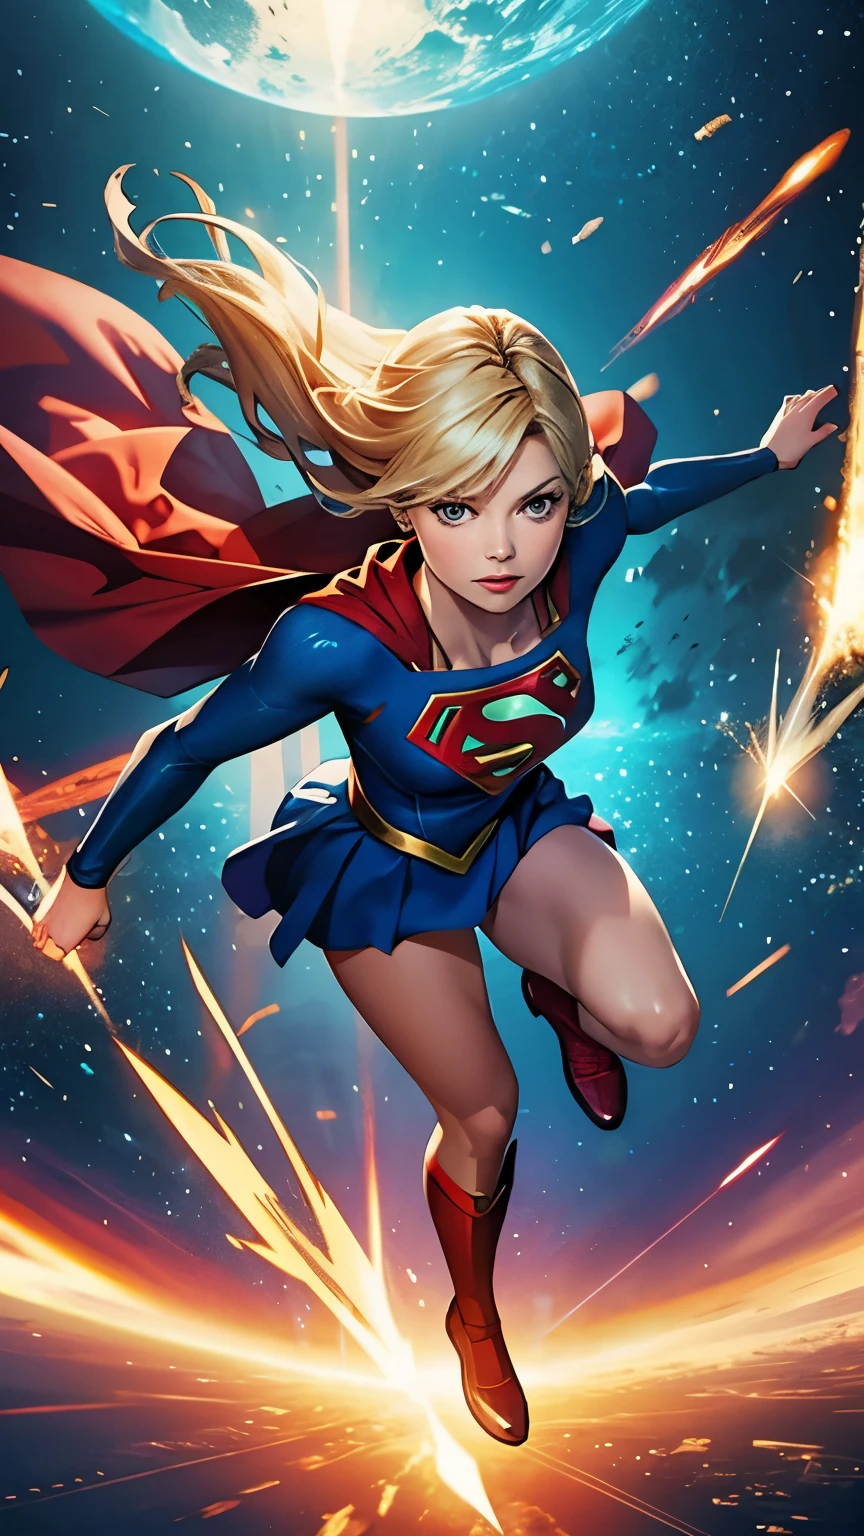 Supergirl voando no tempo e no espaço